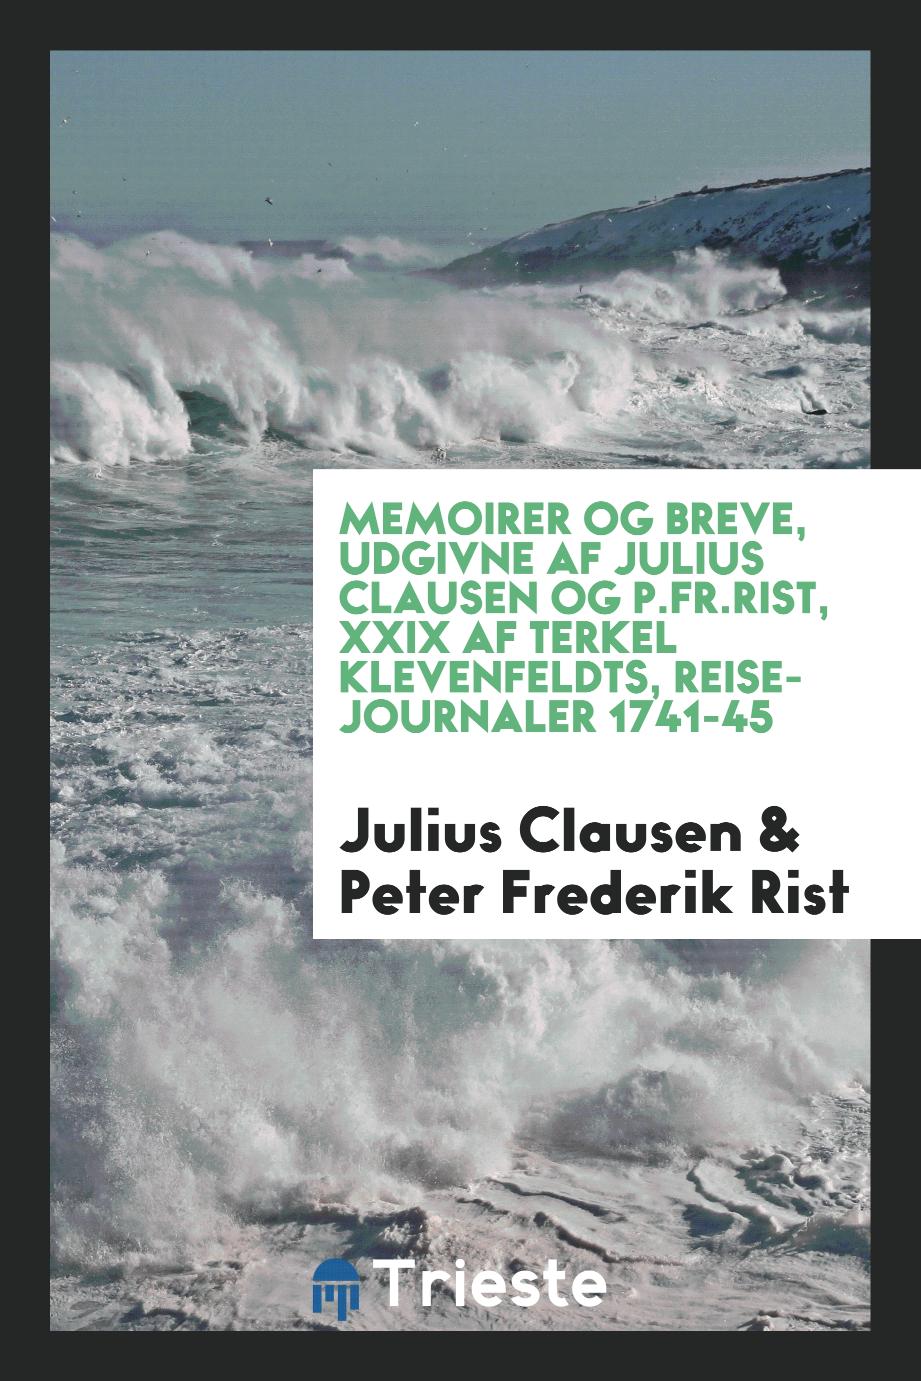 Memoirer og breve, udgivne af Julius Clausen og P.Fr.Rist, XXIX af Terkel Klevenfeldts, reise-journaler 1741-45